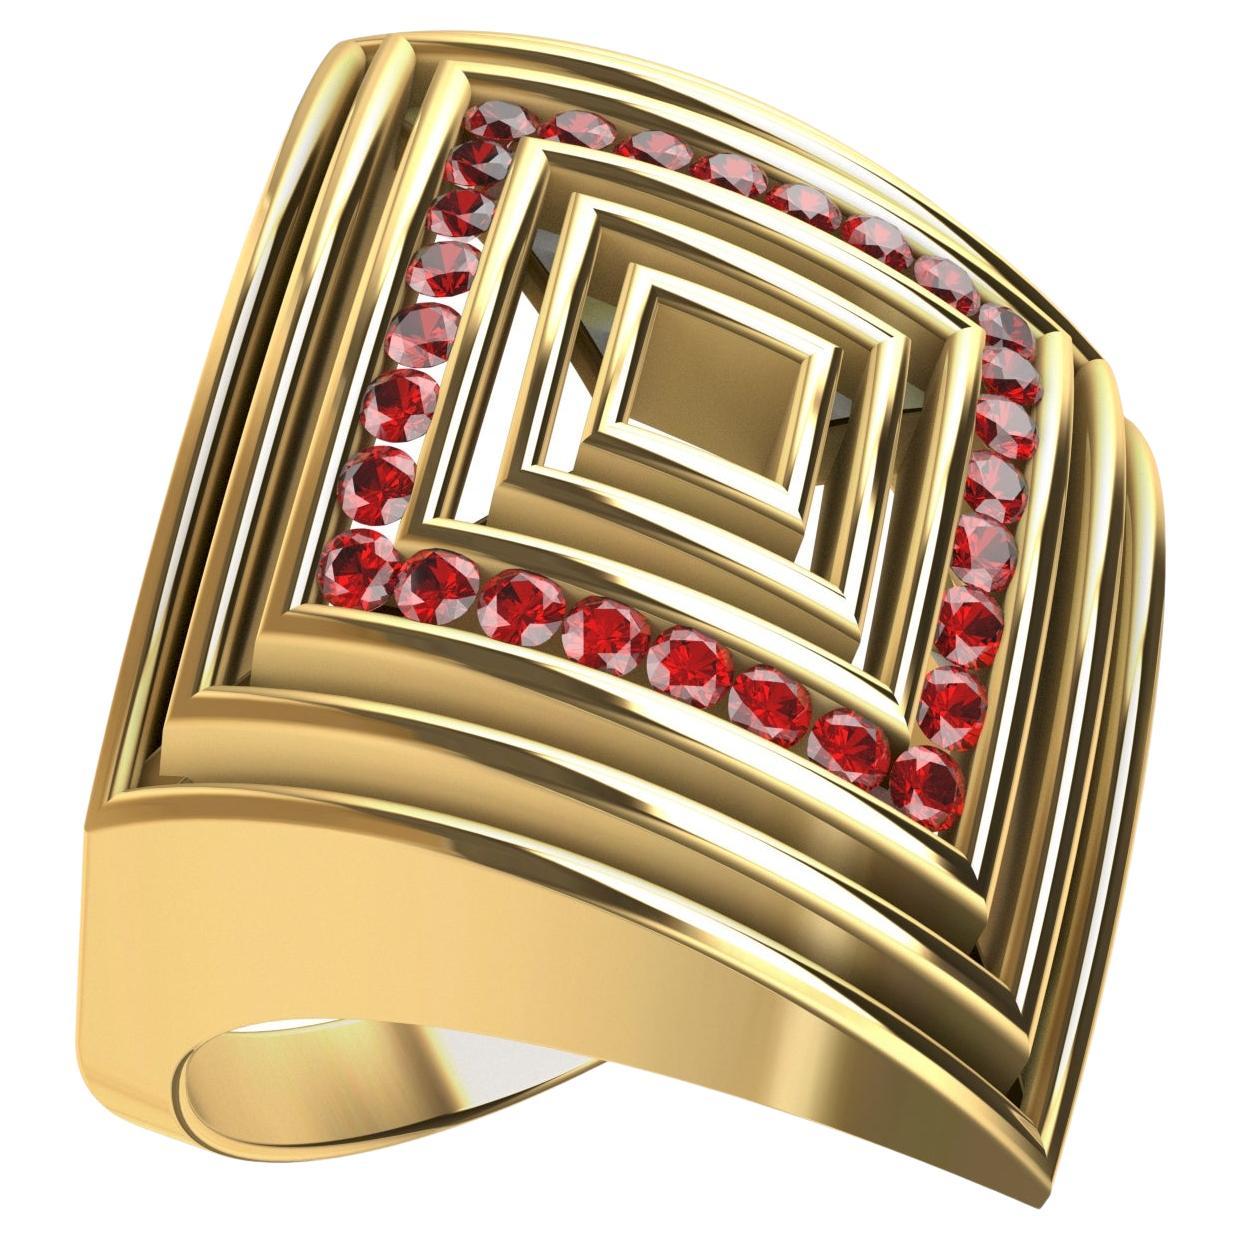 Thomas Kurilla Jewelry Fashion Rings